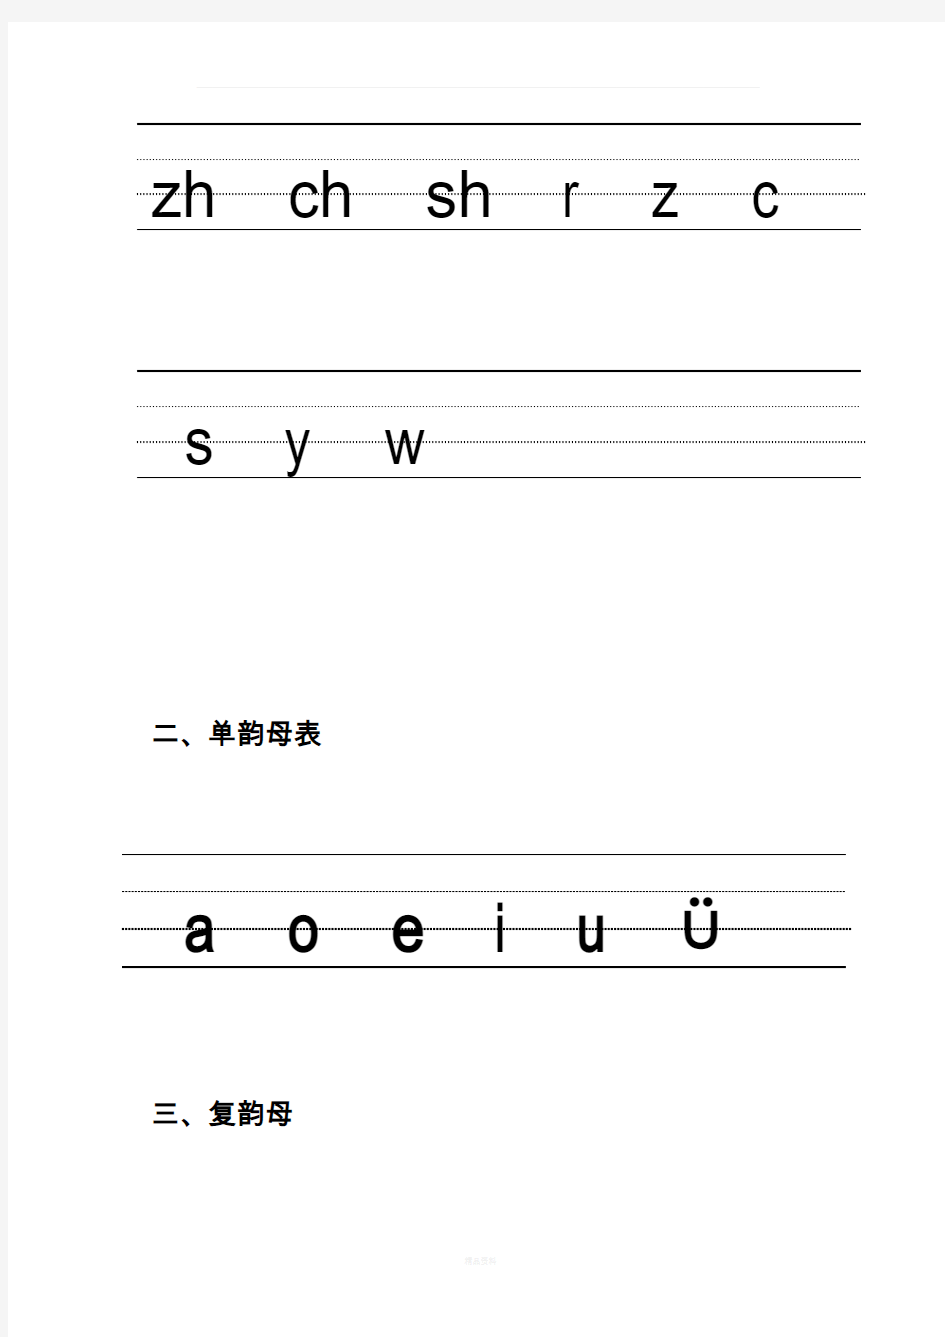 汉语拼音的书写格式(四线三格)18197